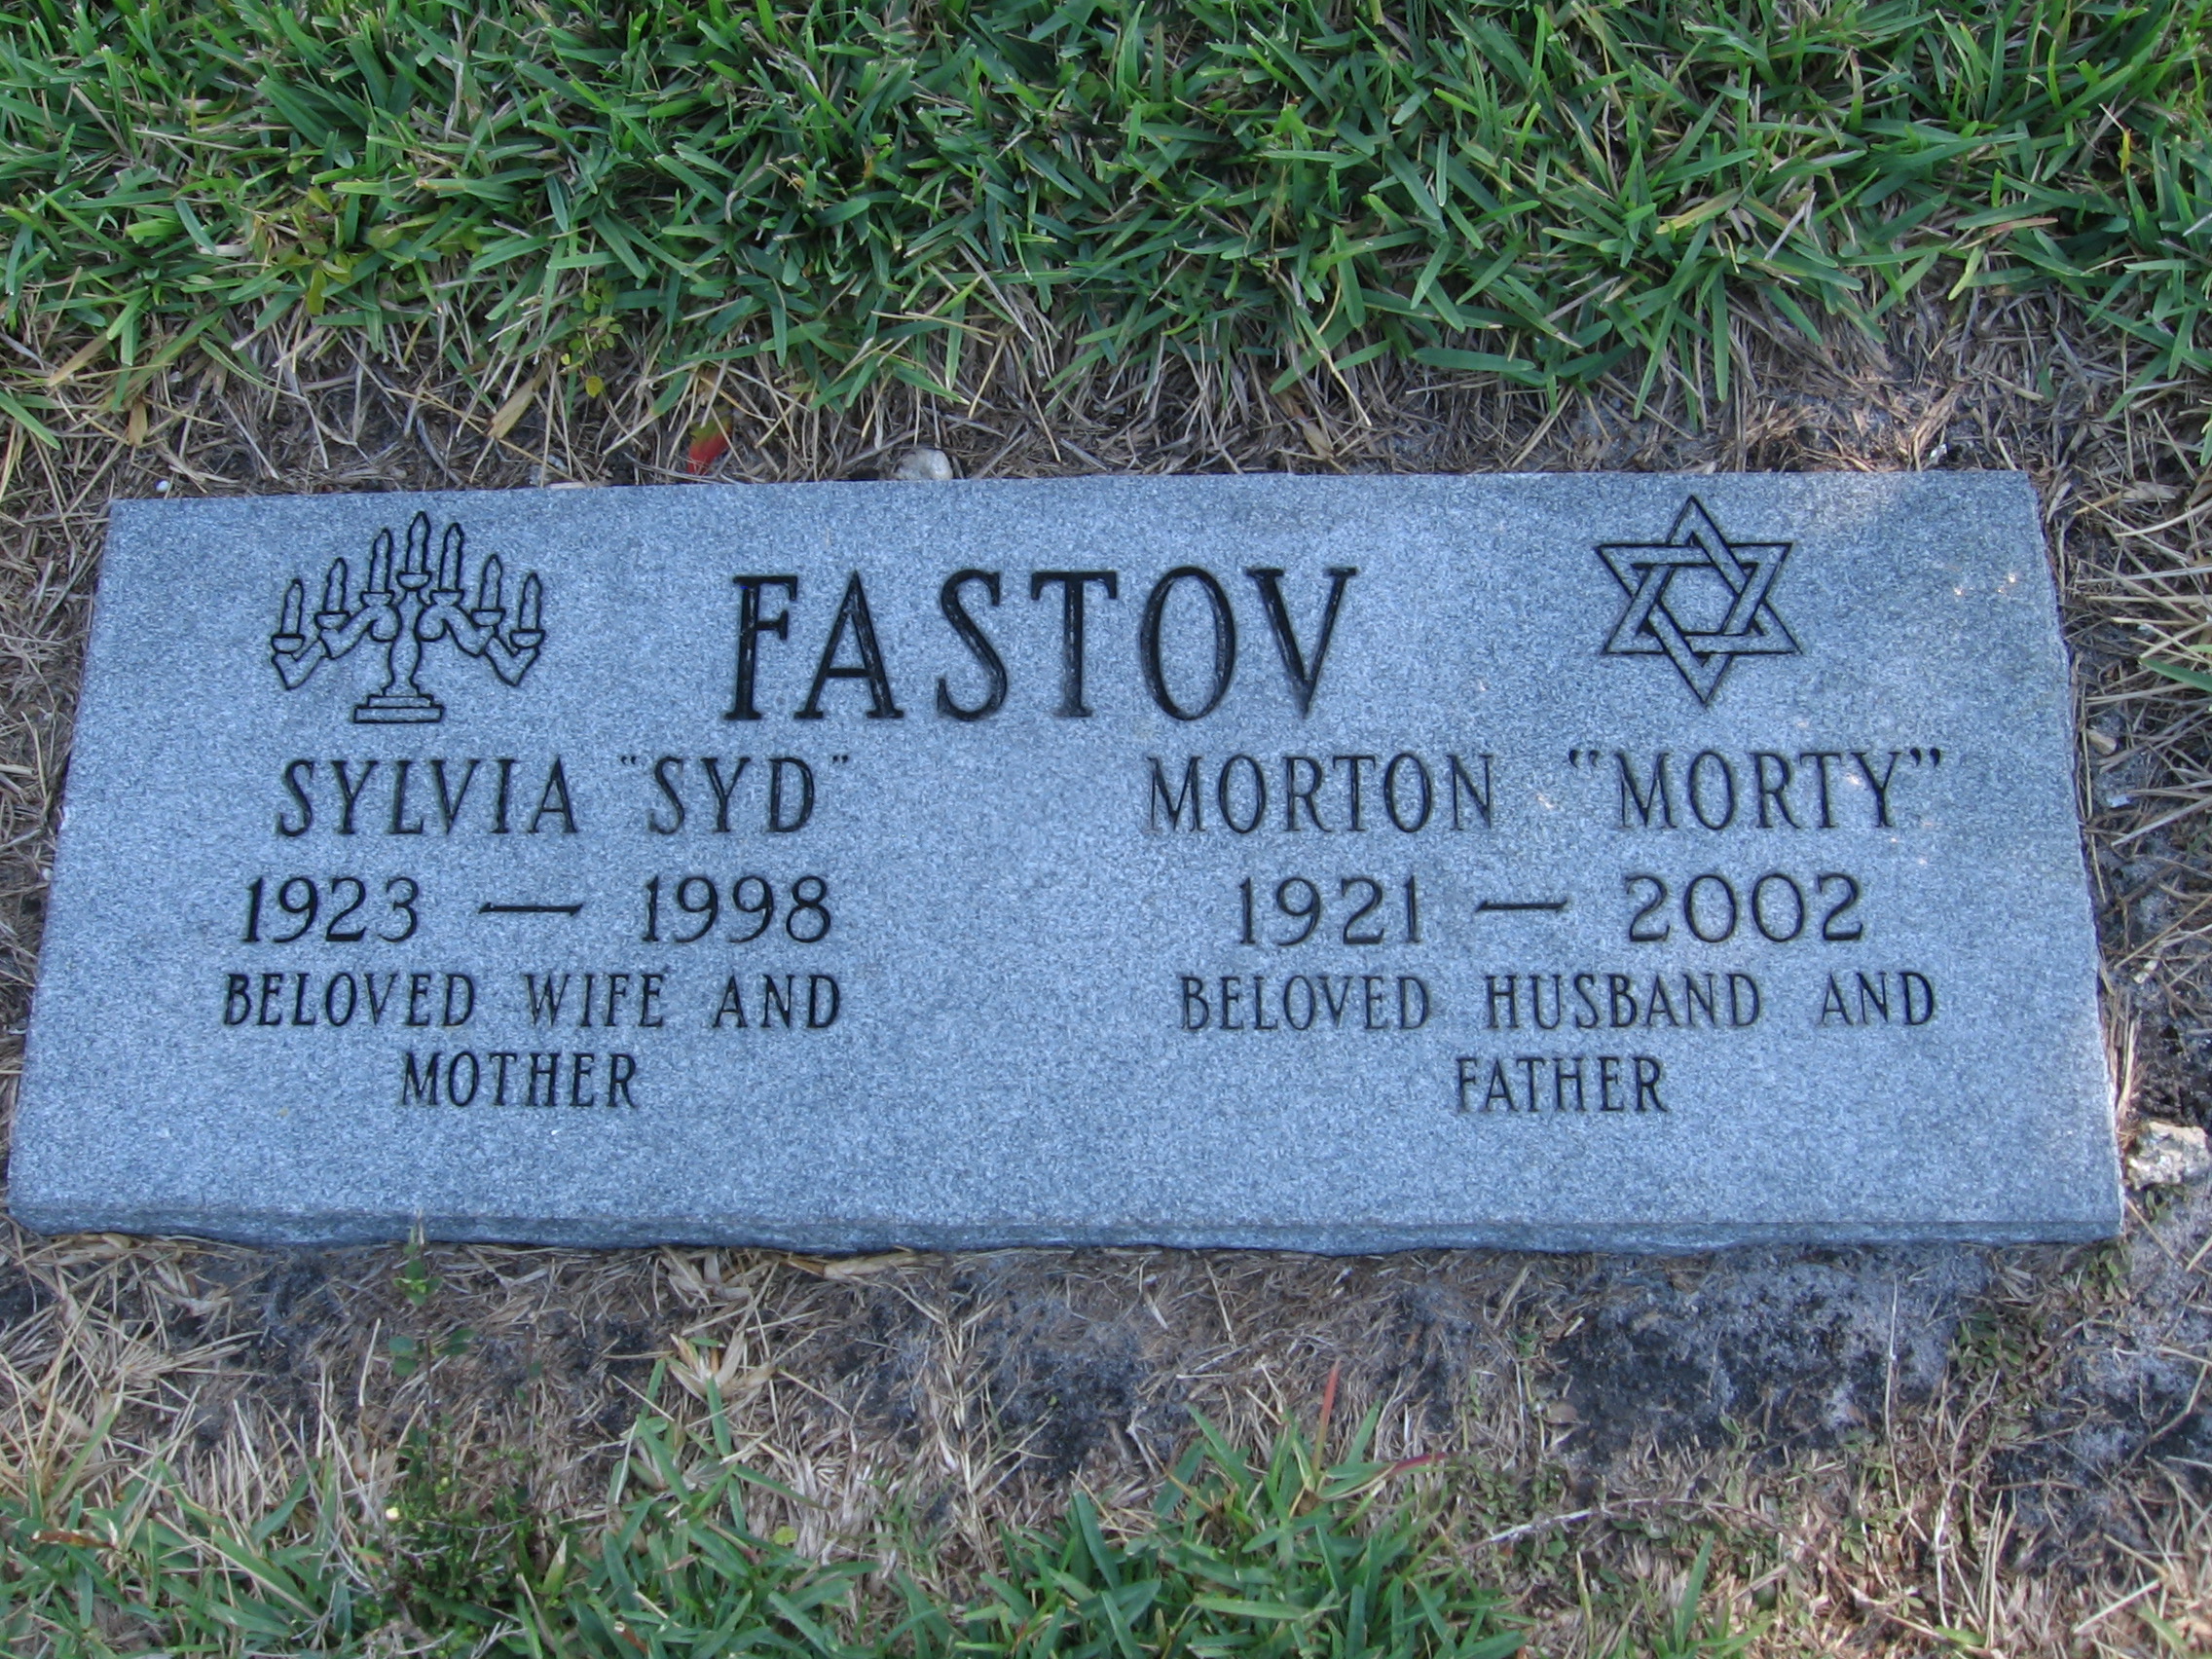 Morton "Morty" Fastov